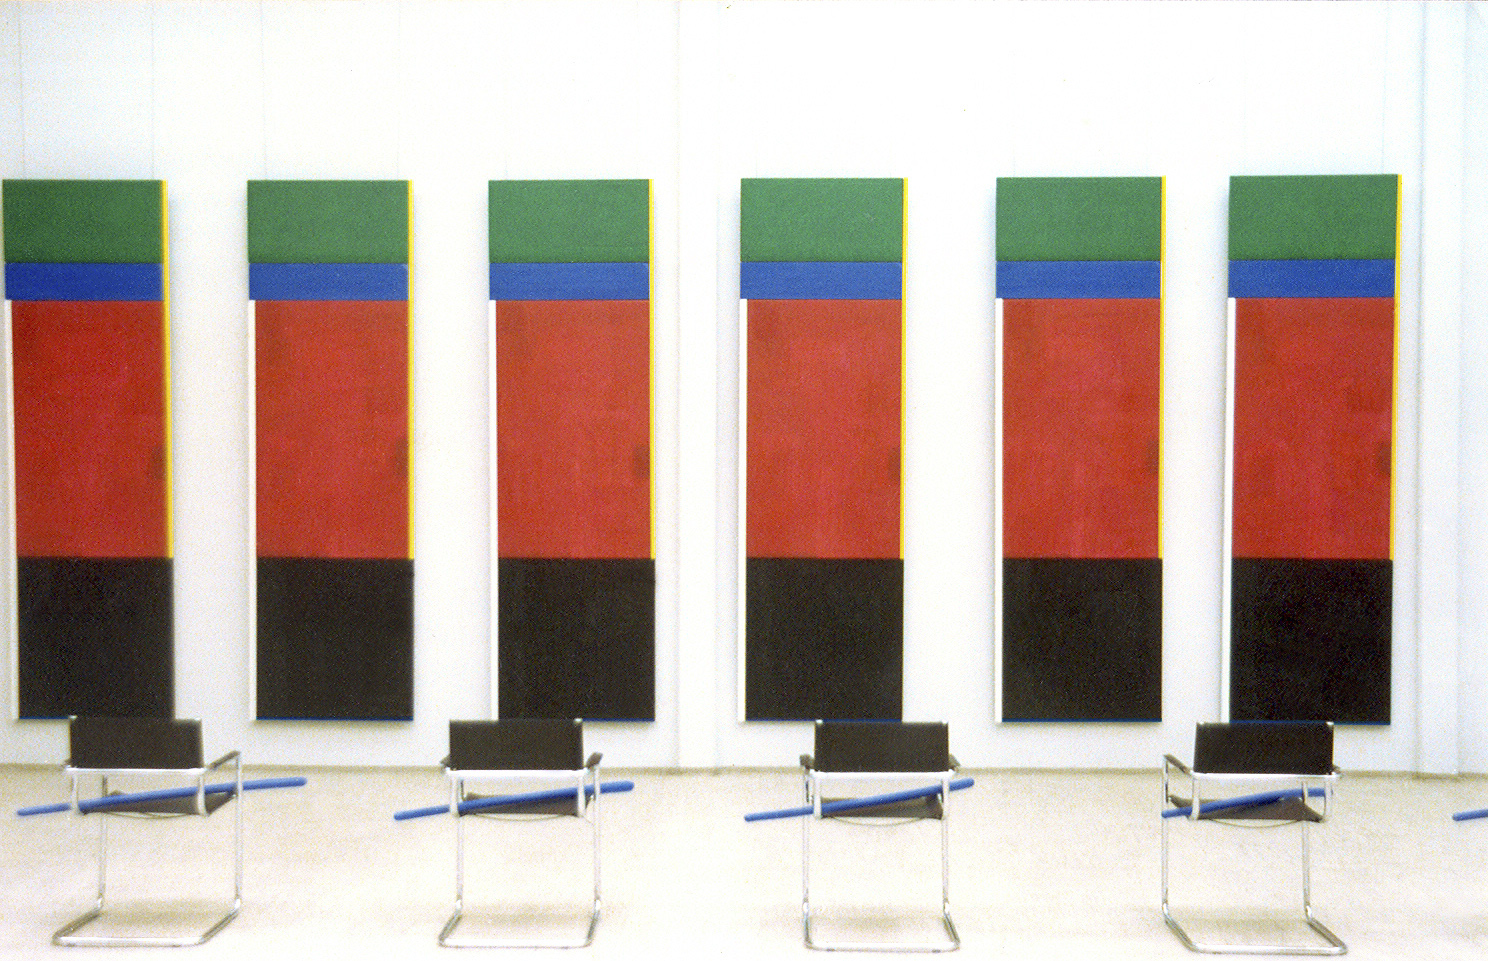 akril, les (6 tabel 300 x 90 cm), 6 stolov in 6 modrih palic, 1994